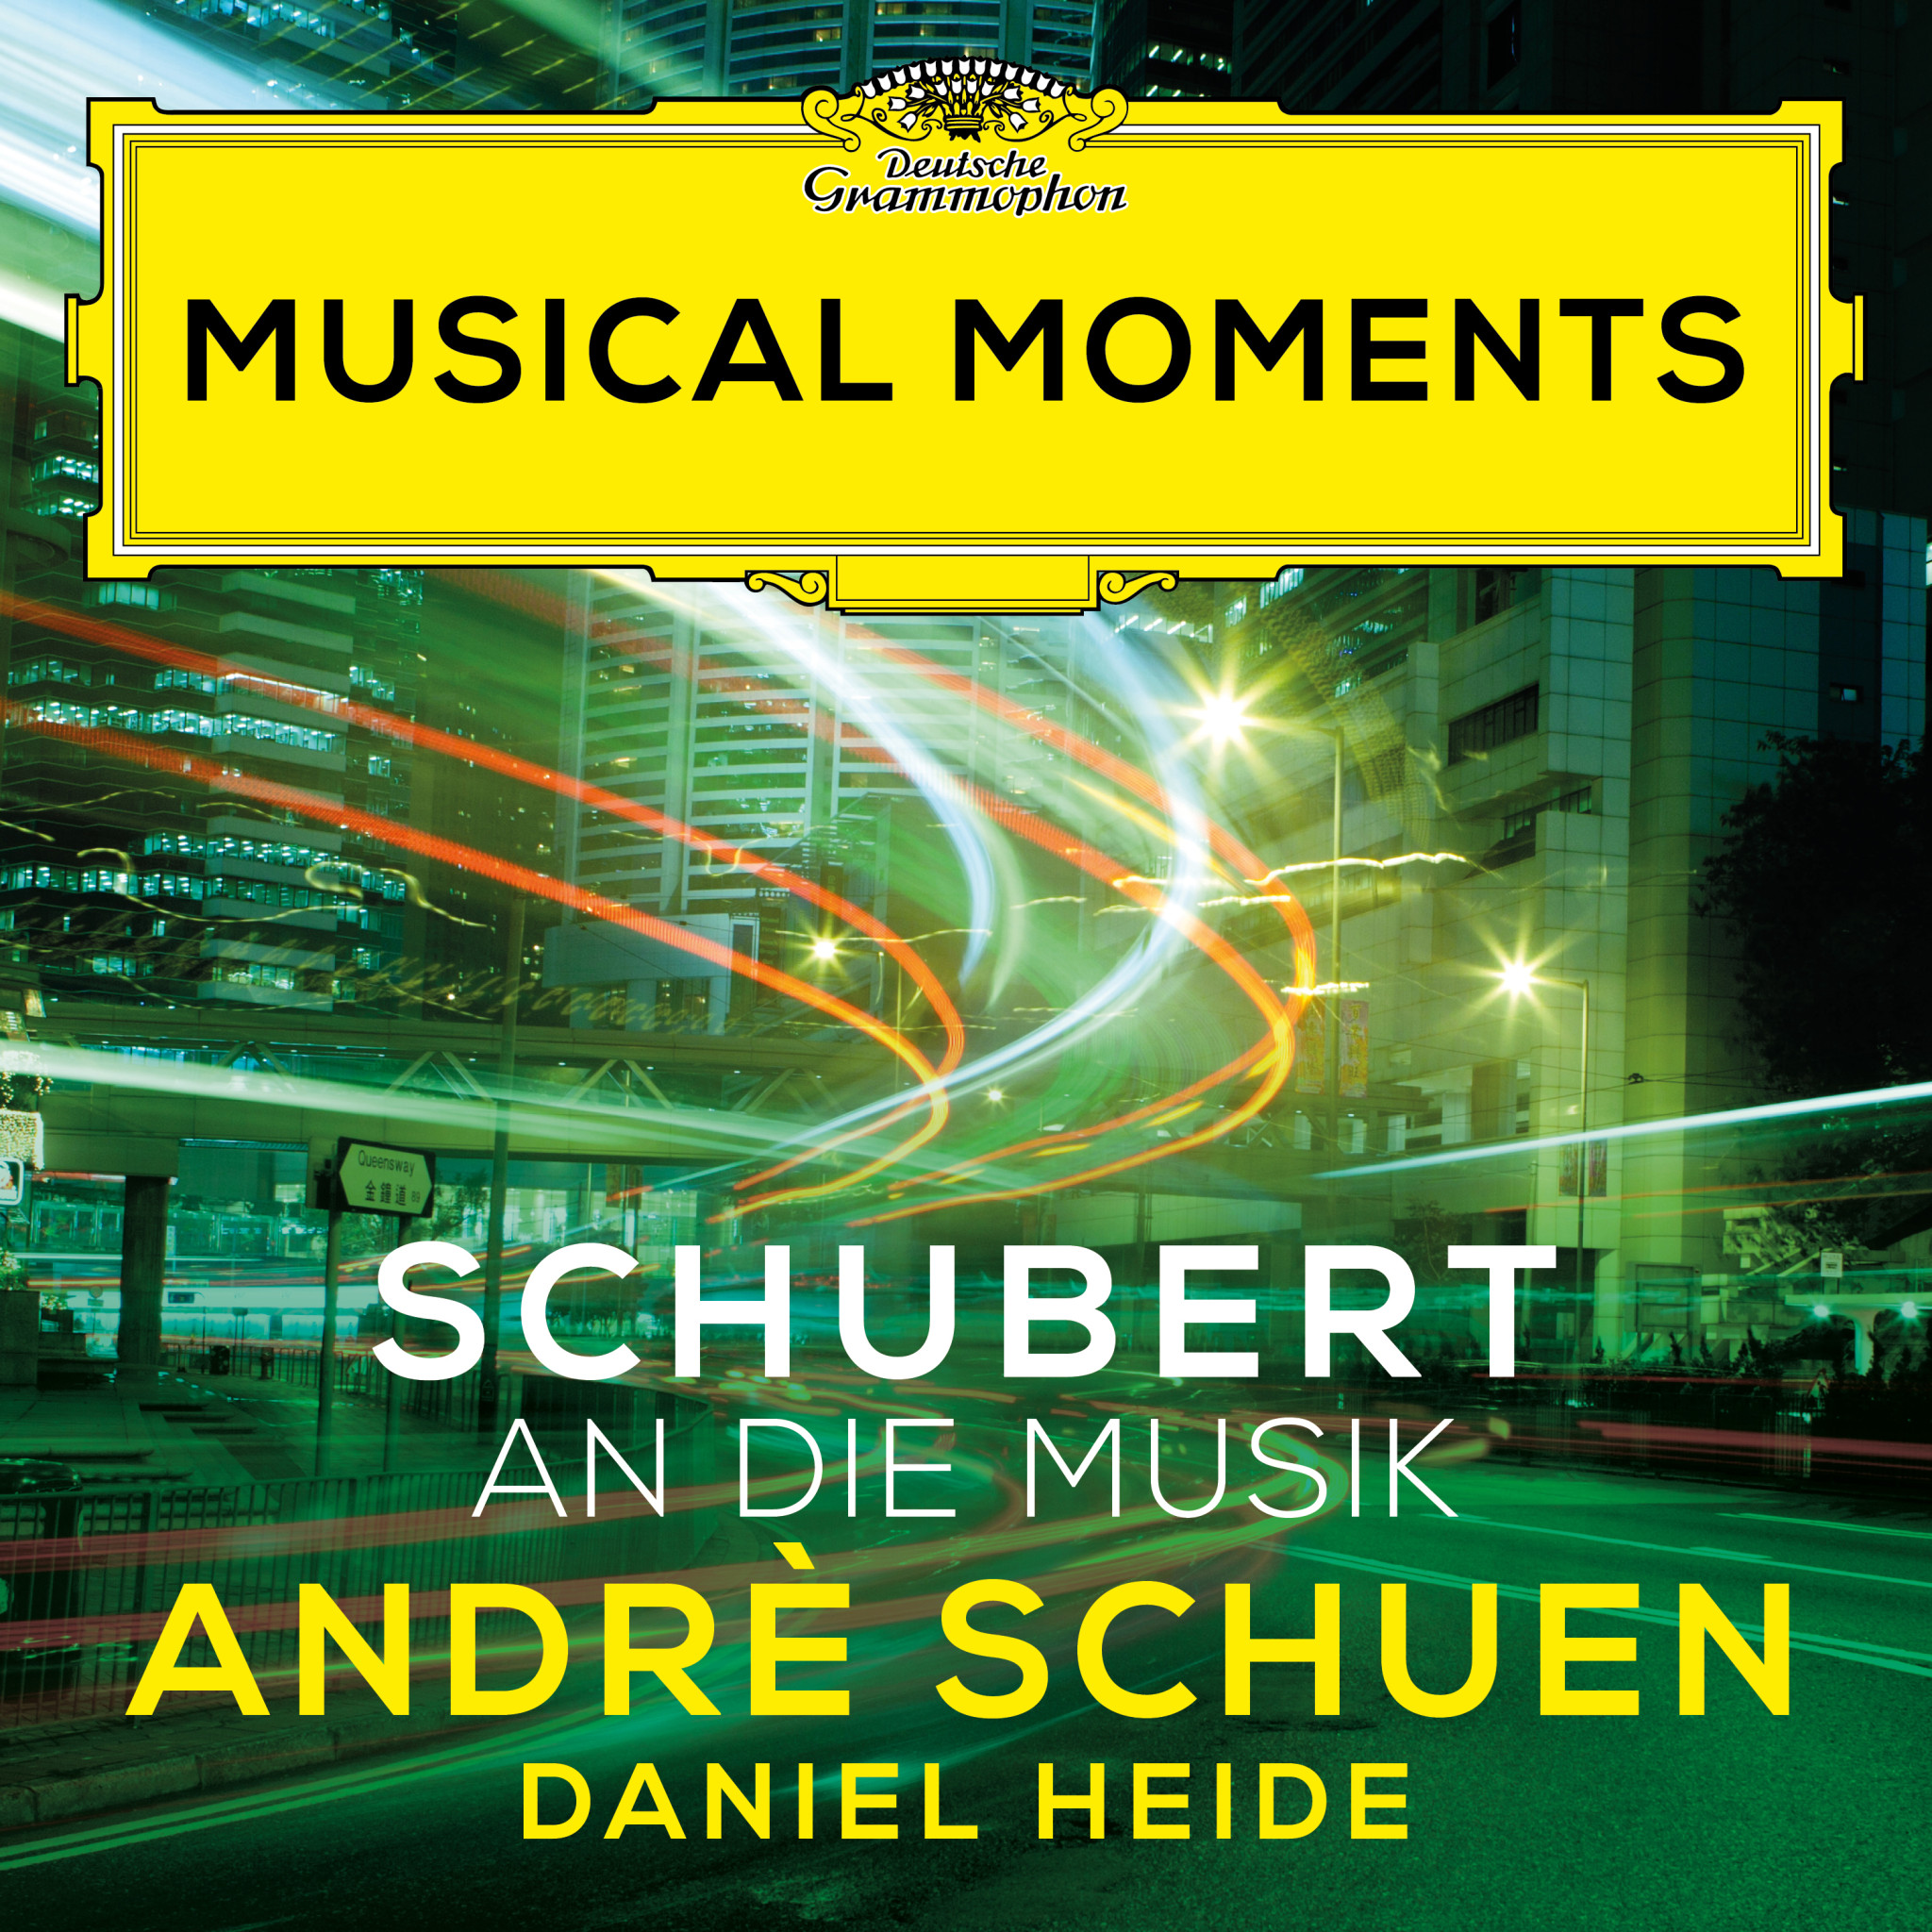 Andrè Schuen - Franz Schubert: An die Musik D. 547, Op. 88, No. 4 (Musical Moments)